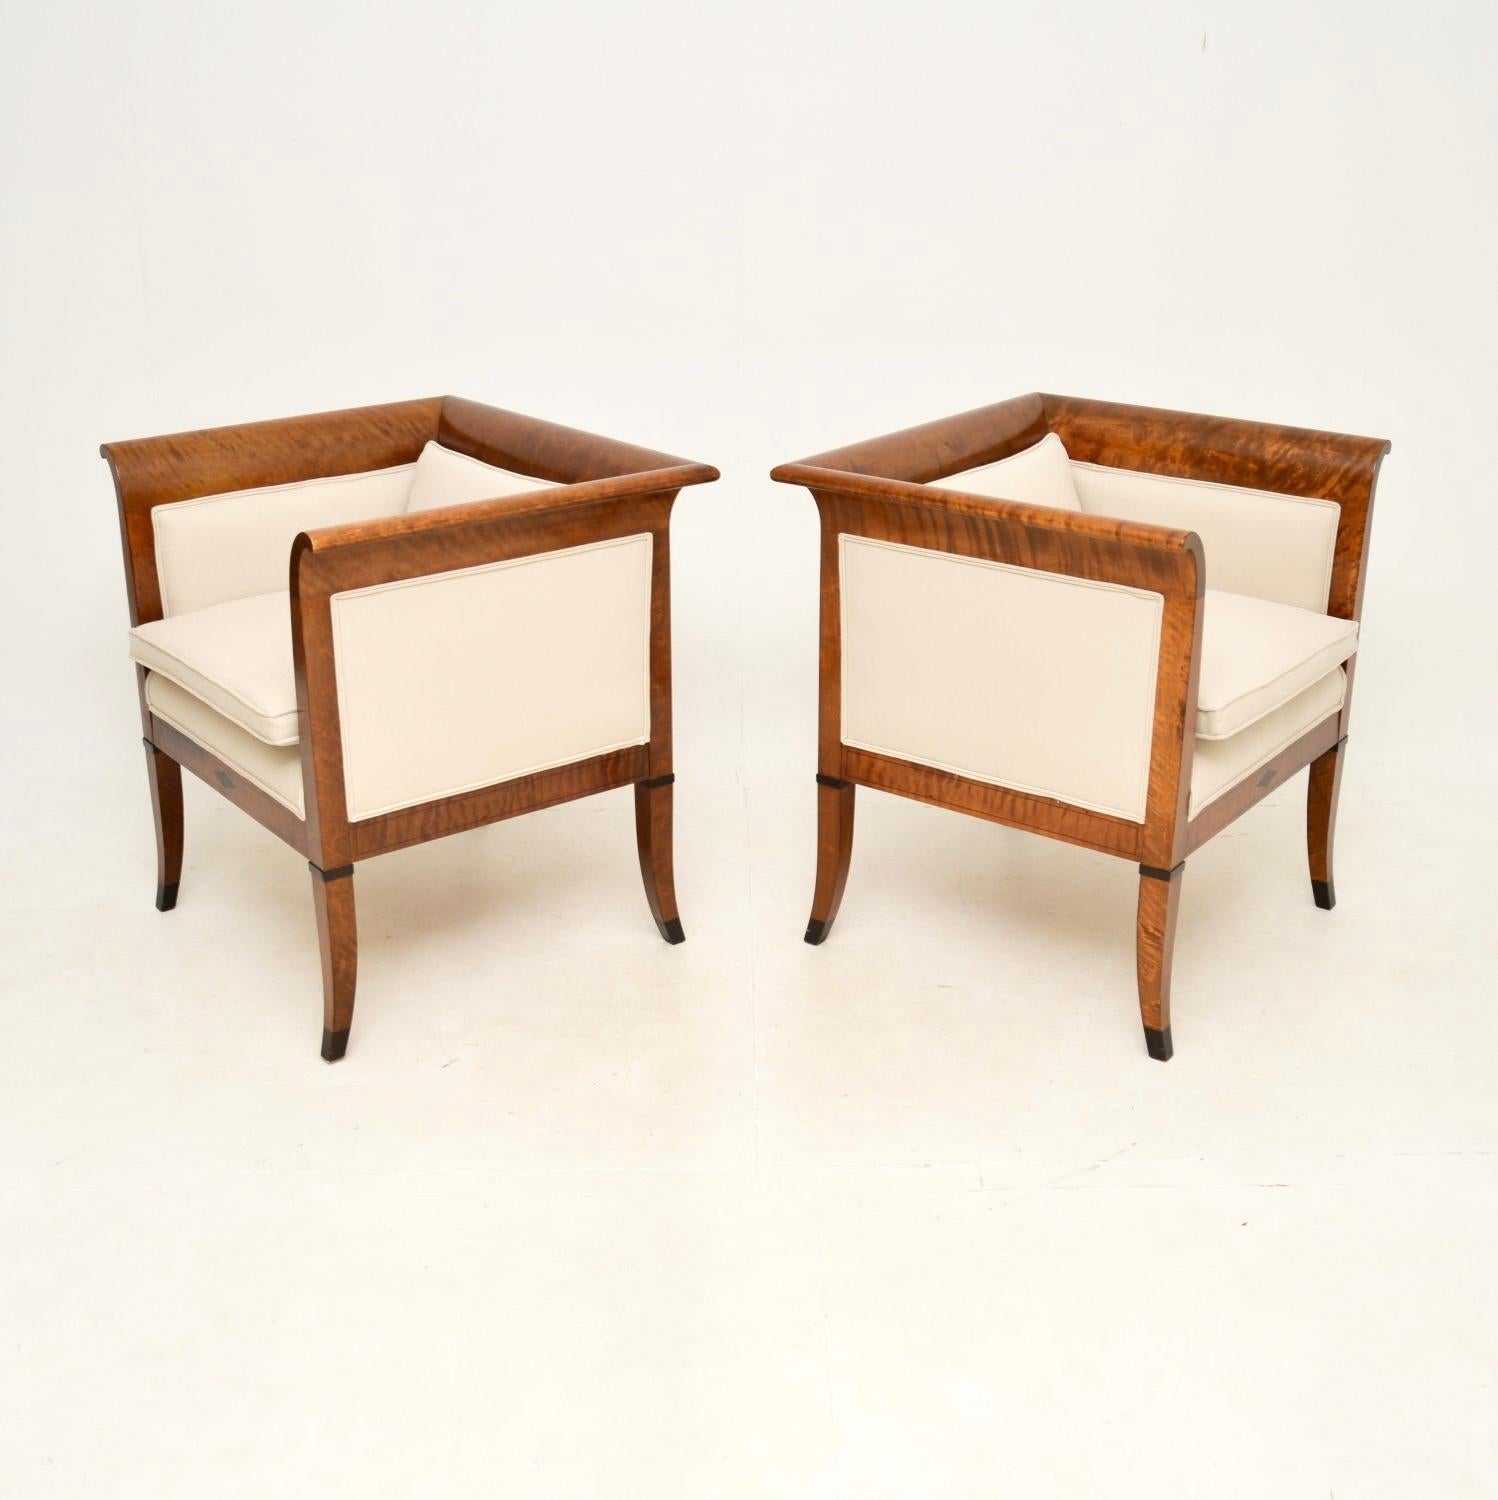 Une superbe paire de fauteuils Biedermeier anciens en bouleau satiné suédois. Ils ont été récemment importés de Suède et datent de la période 1850-1870.

Ils sont d'une superbe qualité, avec un design beau et raffiné. Les cadres en bois satiné